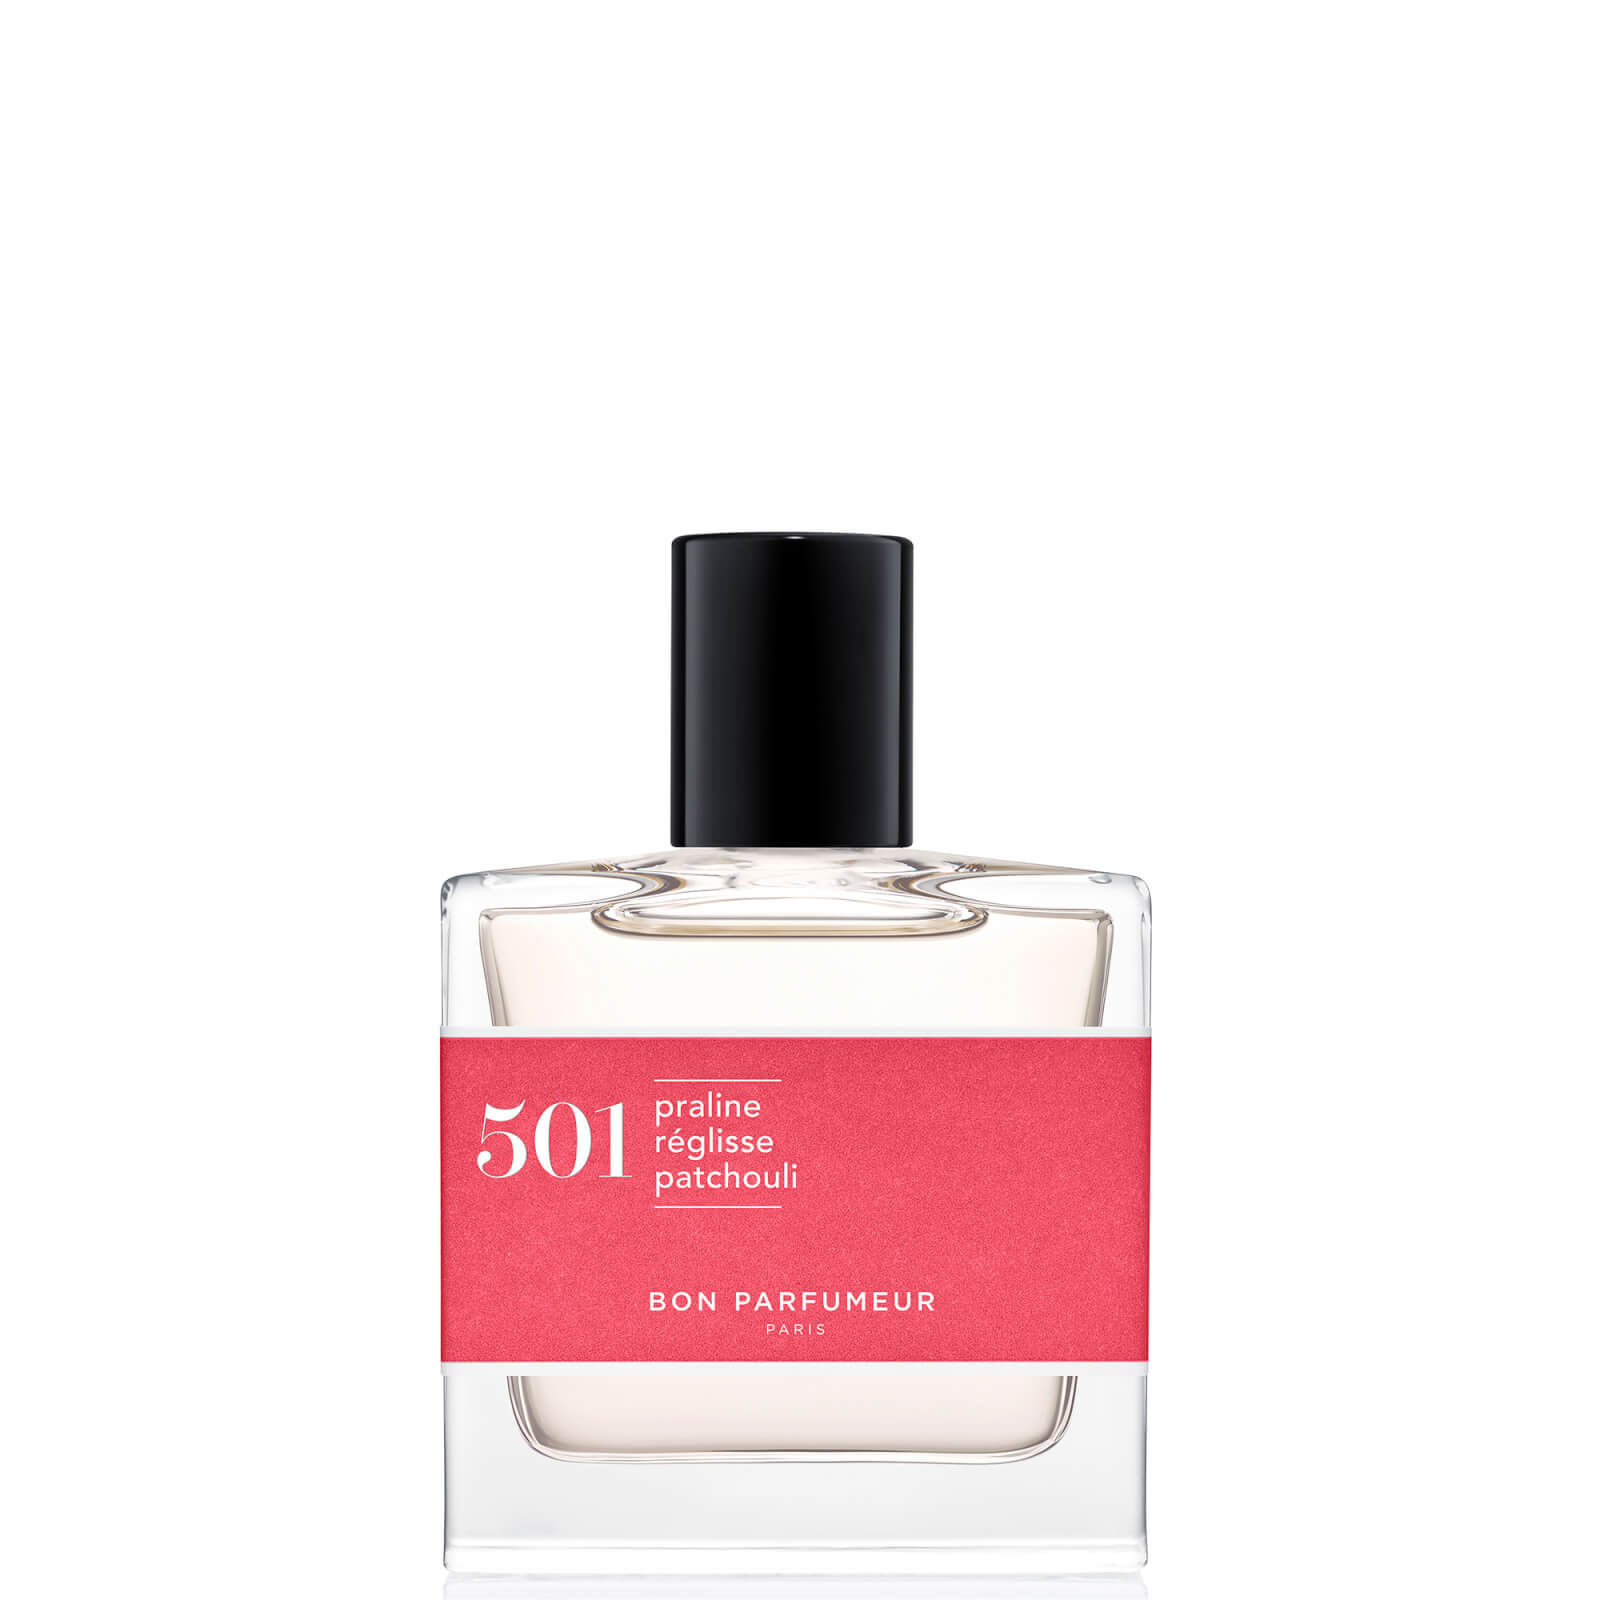 Photos - Women's Fragrance Bon Parfumeur 501 Praline Licorice Patchouli Eau de Parfum - 30ml BP501EDP 